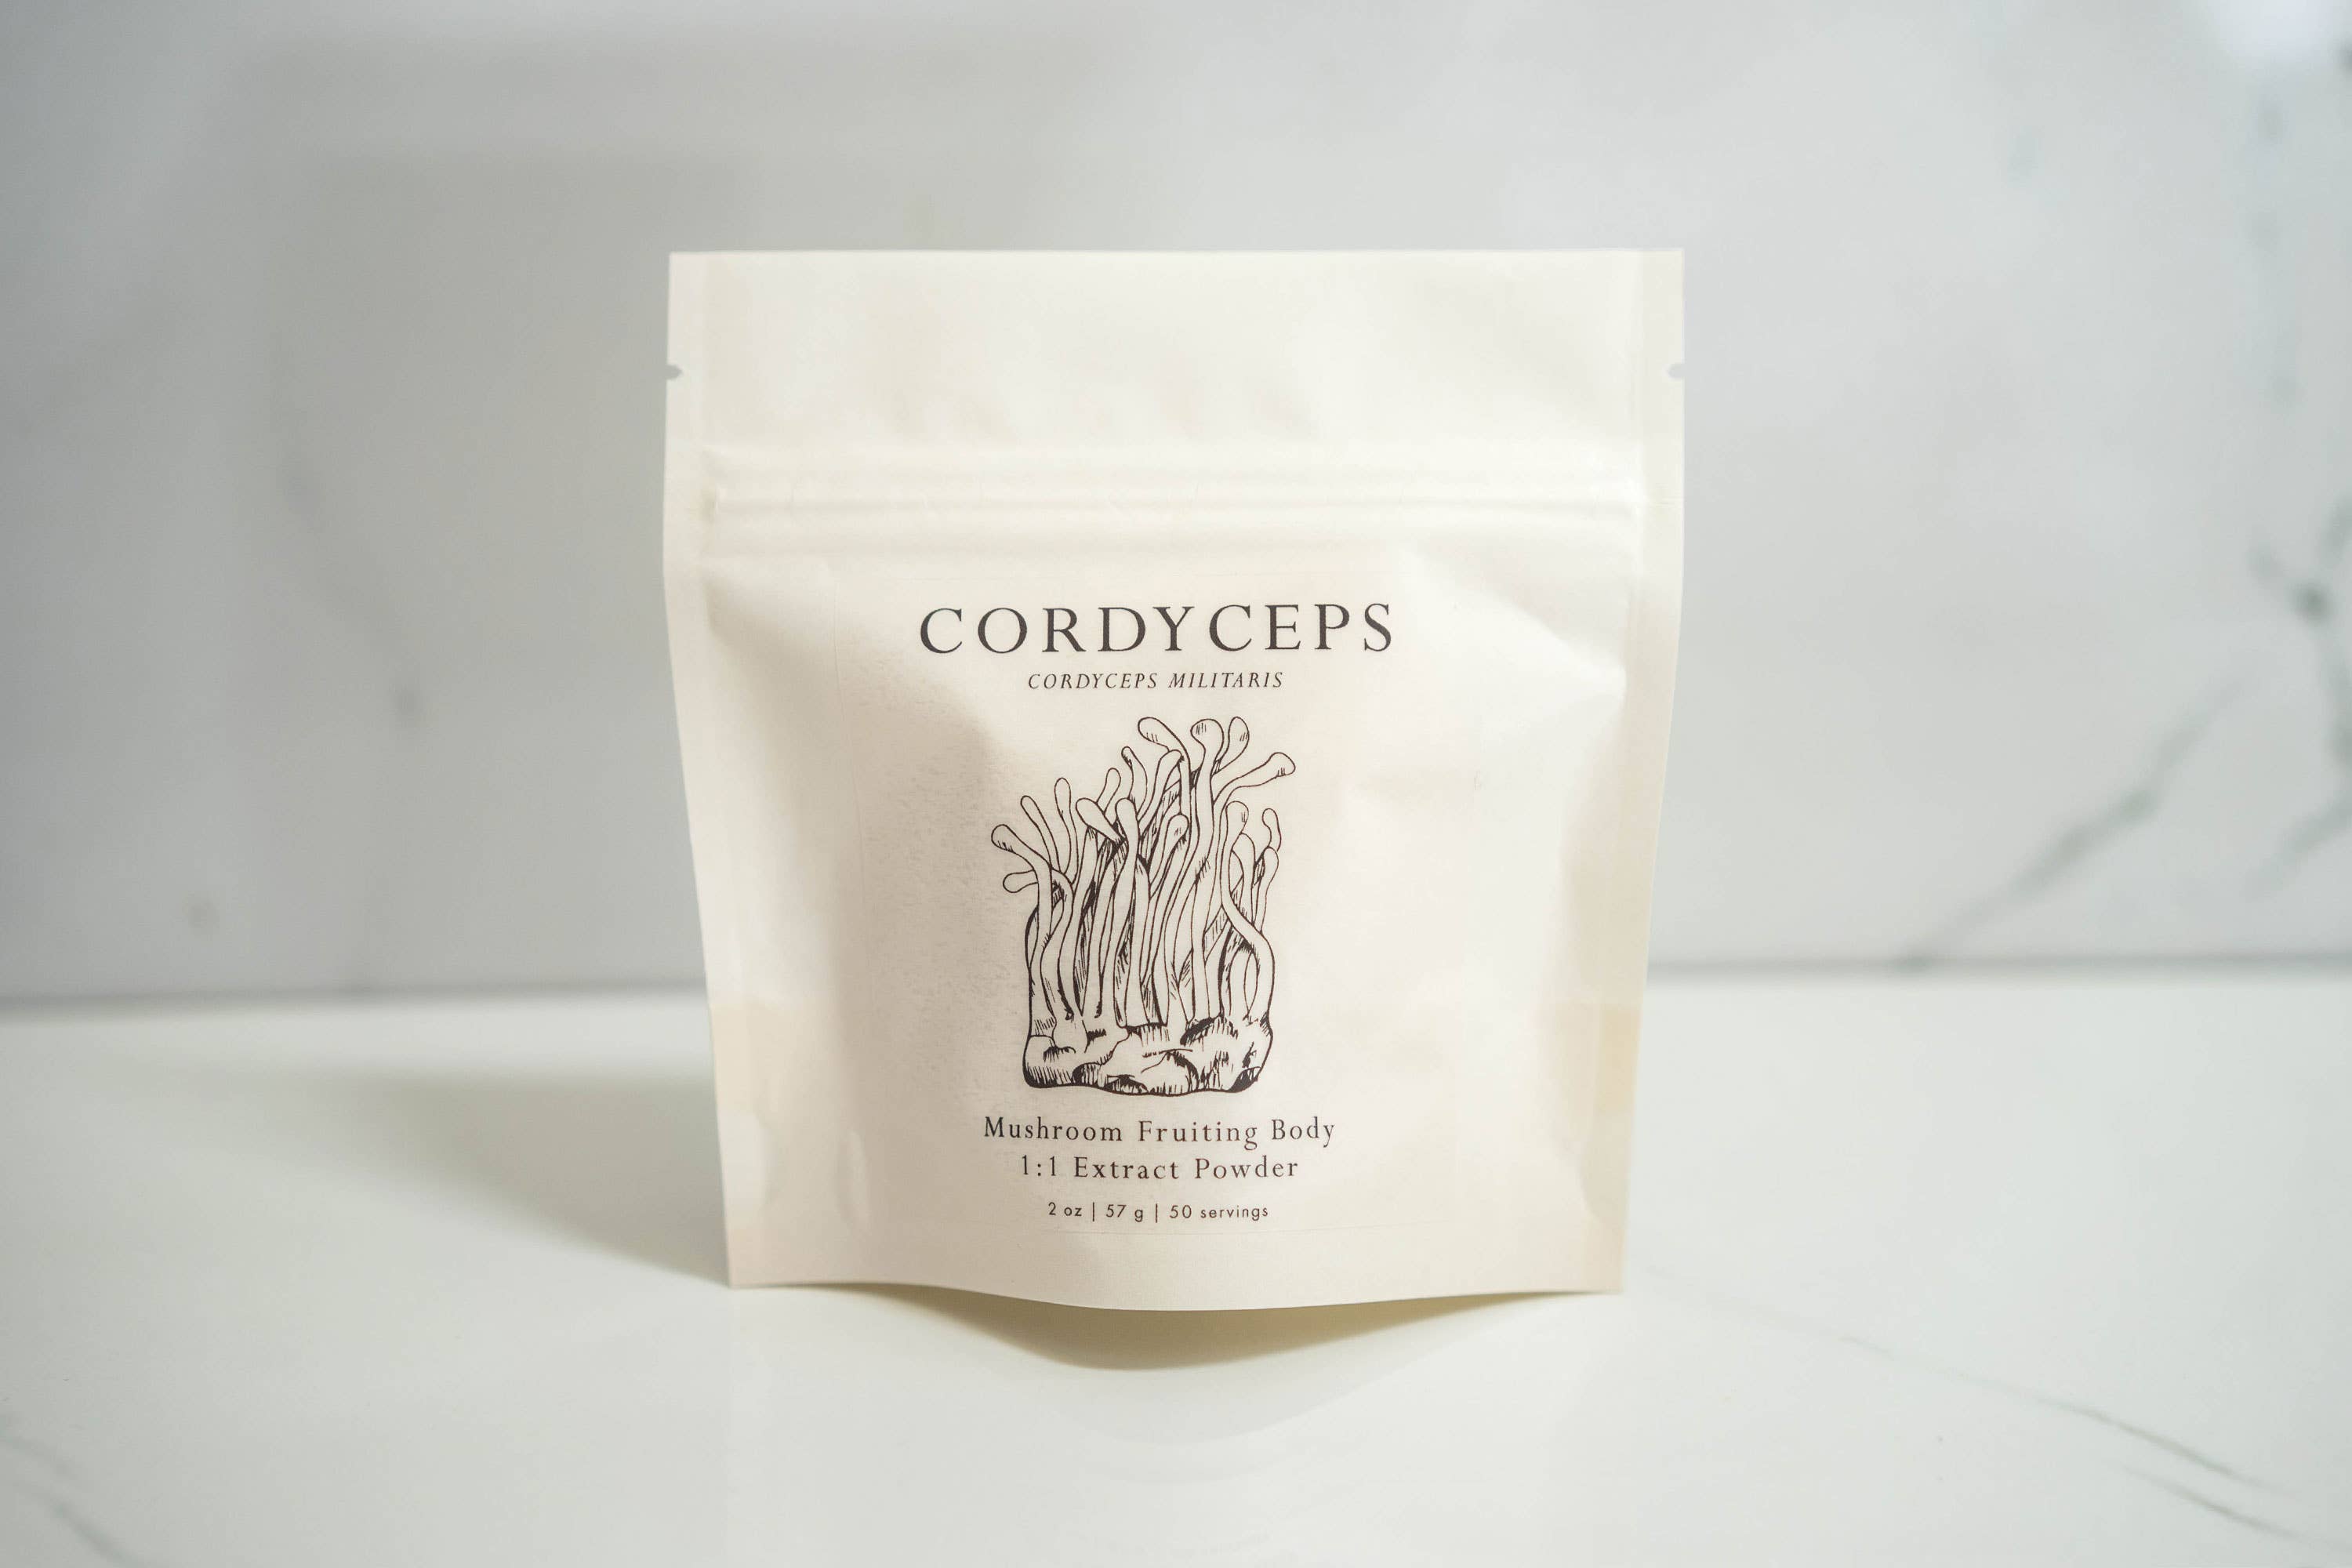 cordyceps mushroom illustration on bag of powdered mushroom